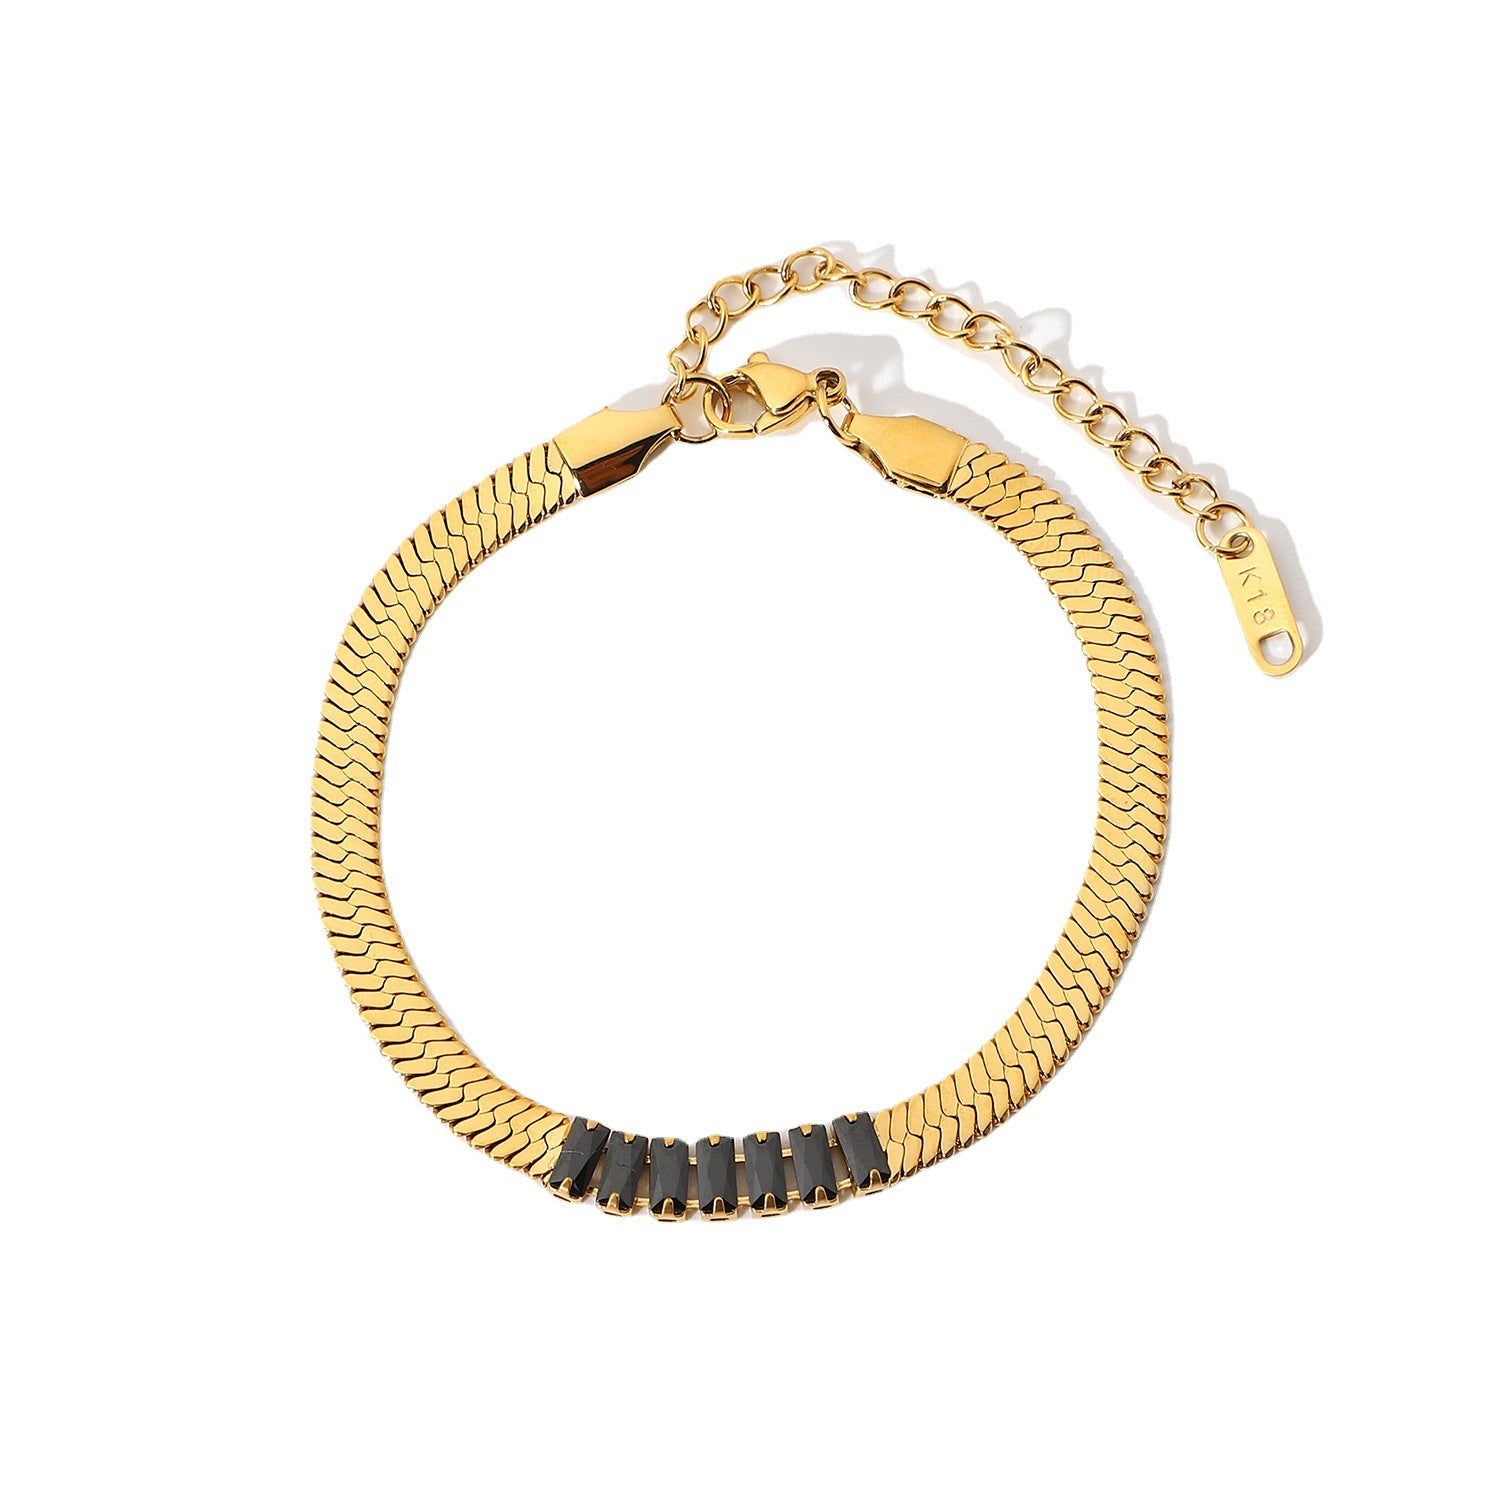 Metal bracelet jewelry rectangular zircon blade bracelet